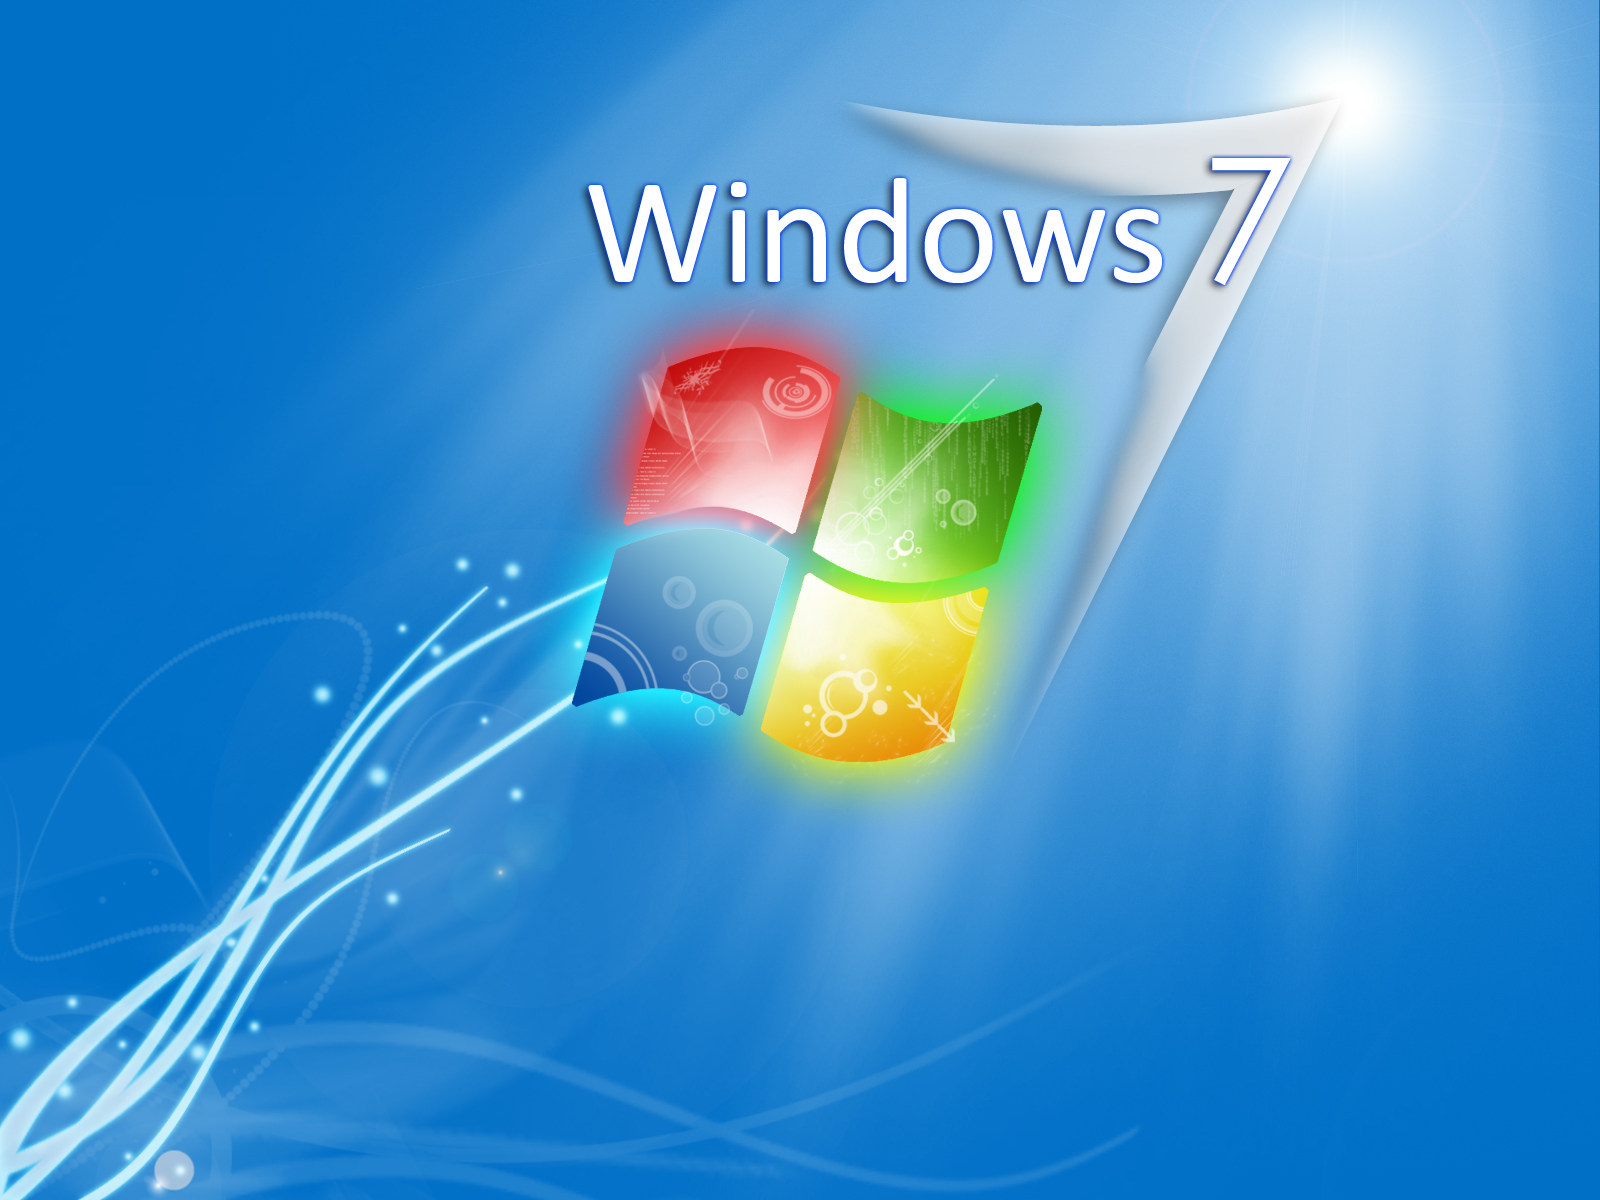 Bạn muốn tải hình nền máy tính Windows 7 đẹp HD miễn phí? Chúng tôi có rất nhiều hình nền đẹp cho bạn lựa chọn, bao gồm cả các chủ đề khác nhau, từ cảnh thiên nhiên đến các bức tranh nghệ thuật. Tất cả đều sẵn sàng để tải xuống và sử dụng ngay lập tức.